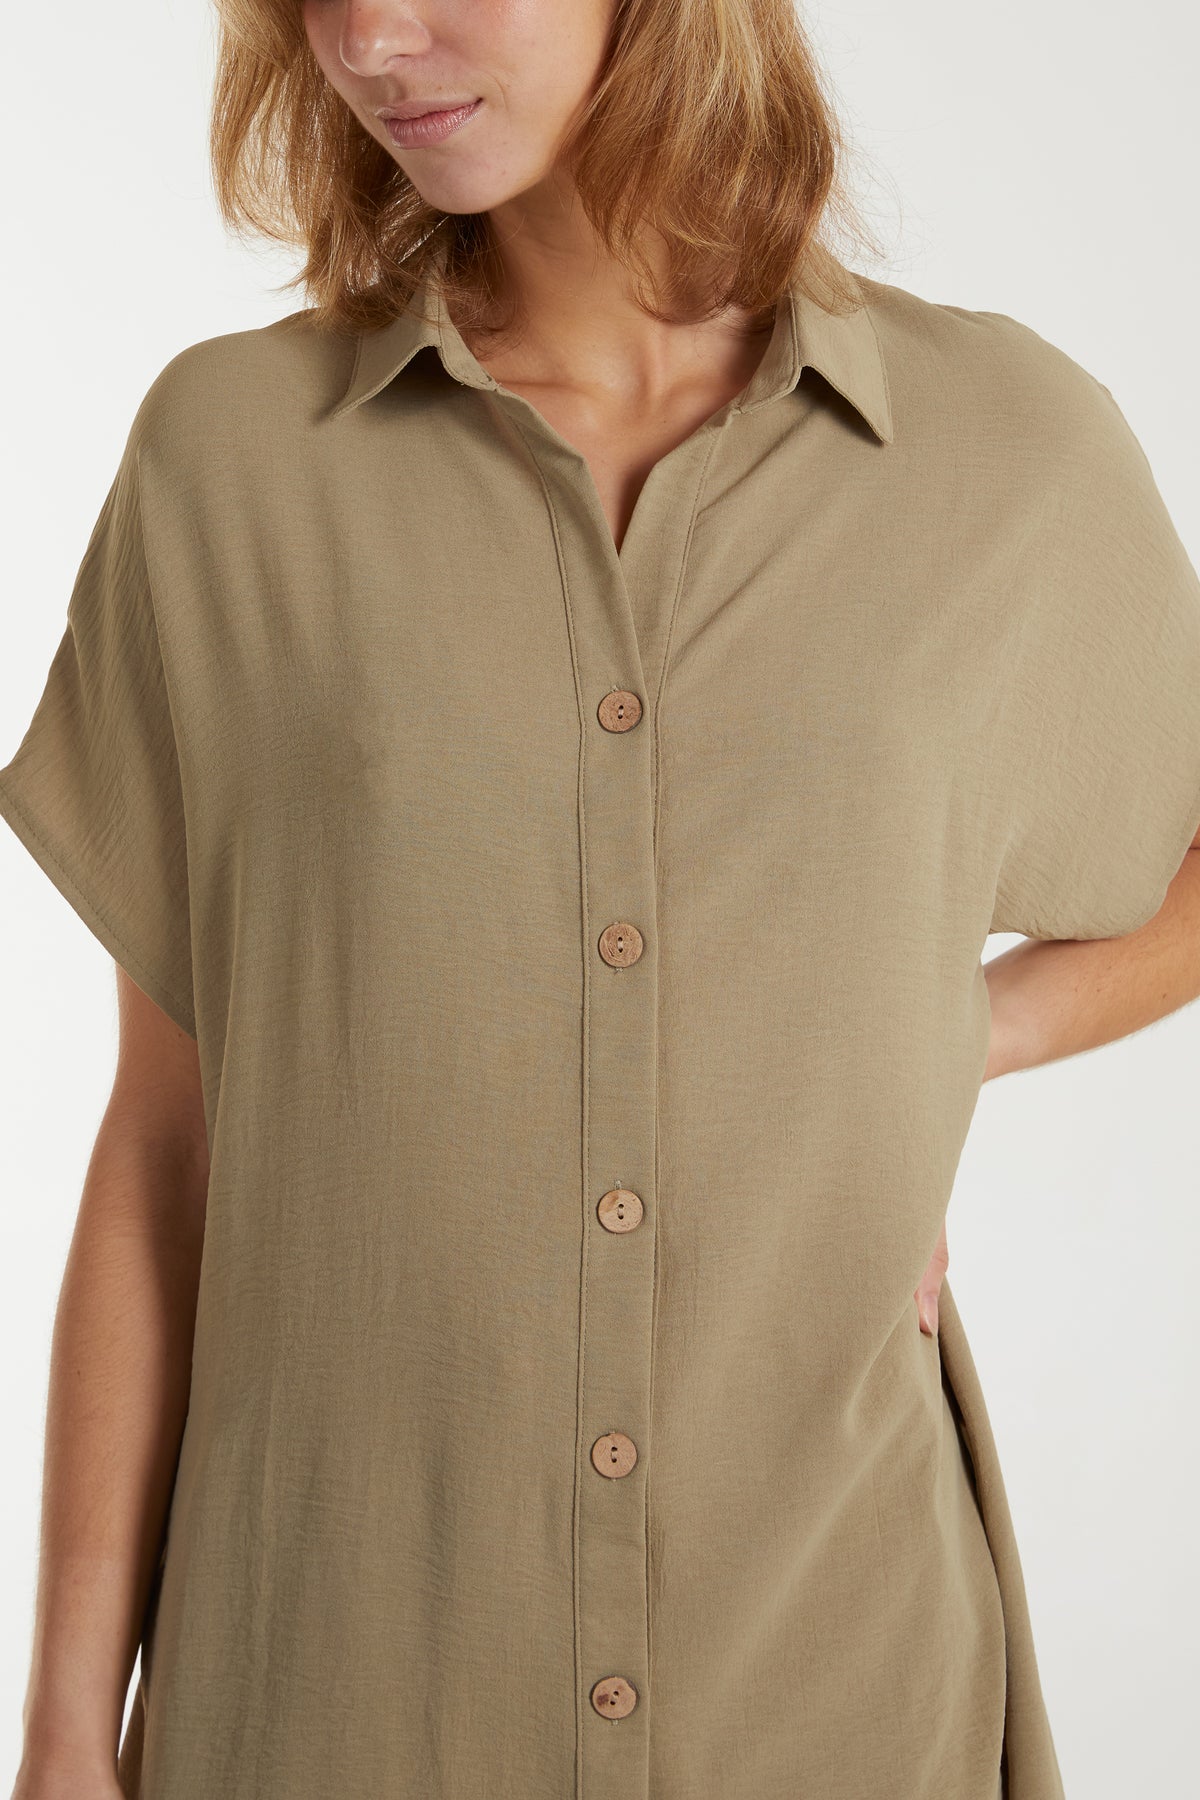 Longline Short Sleeve Button Shirt